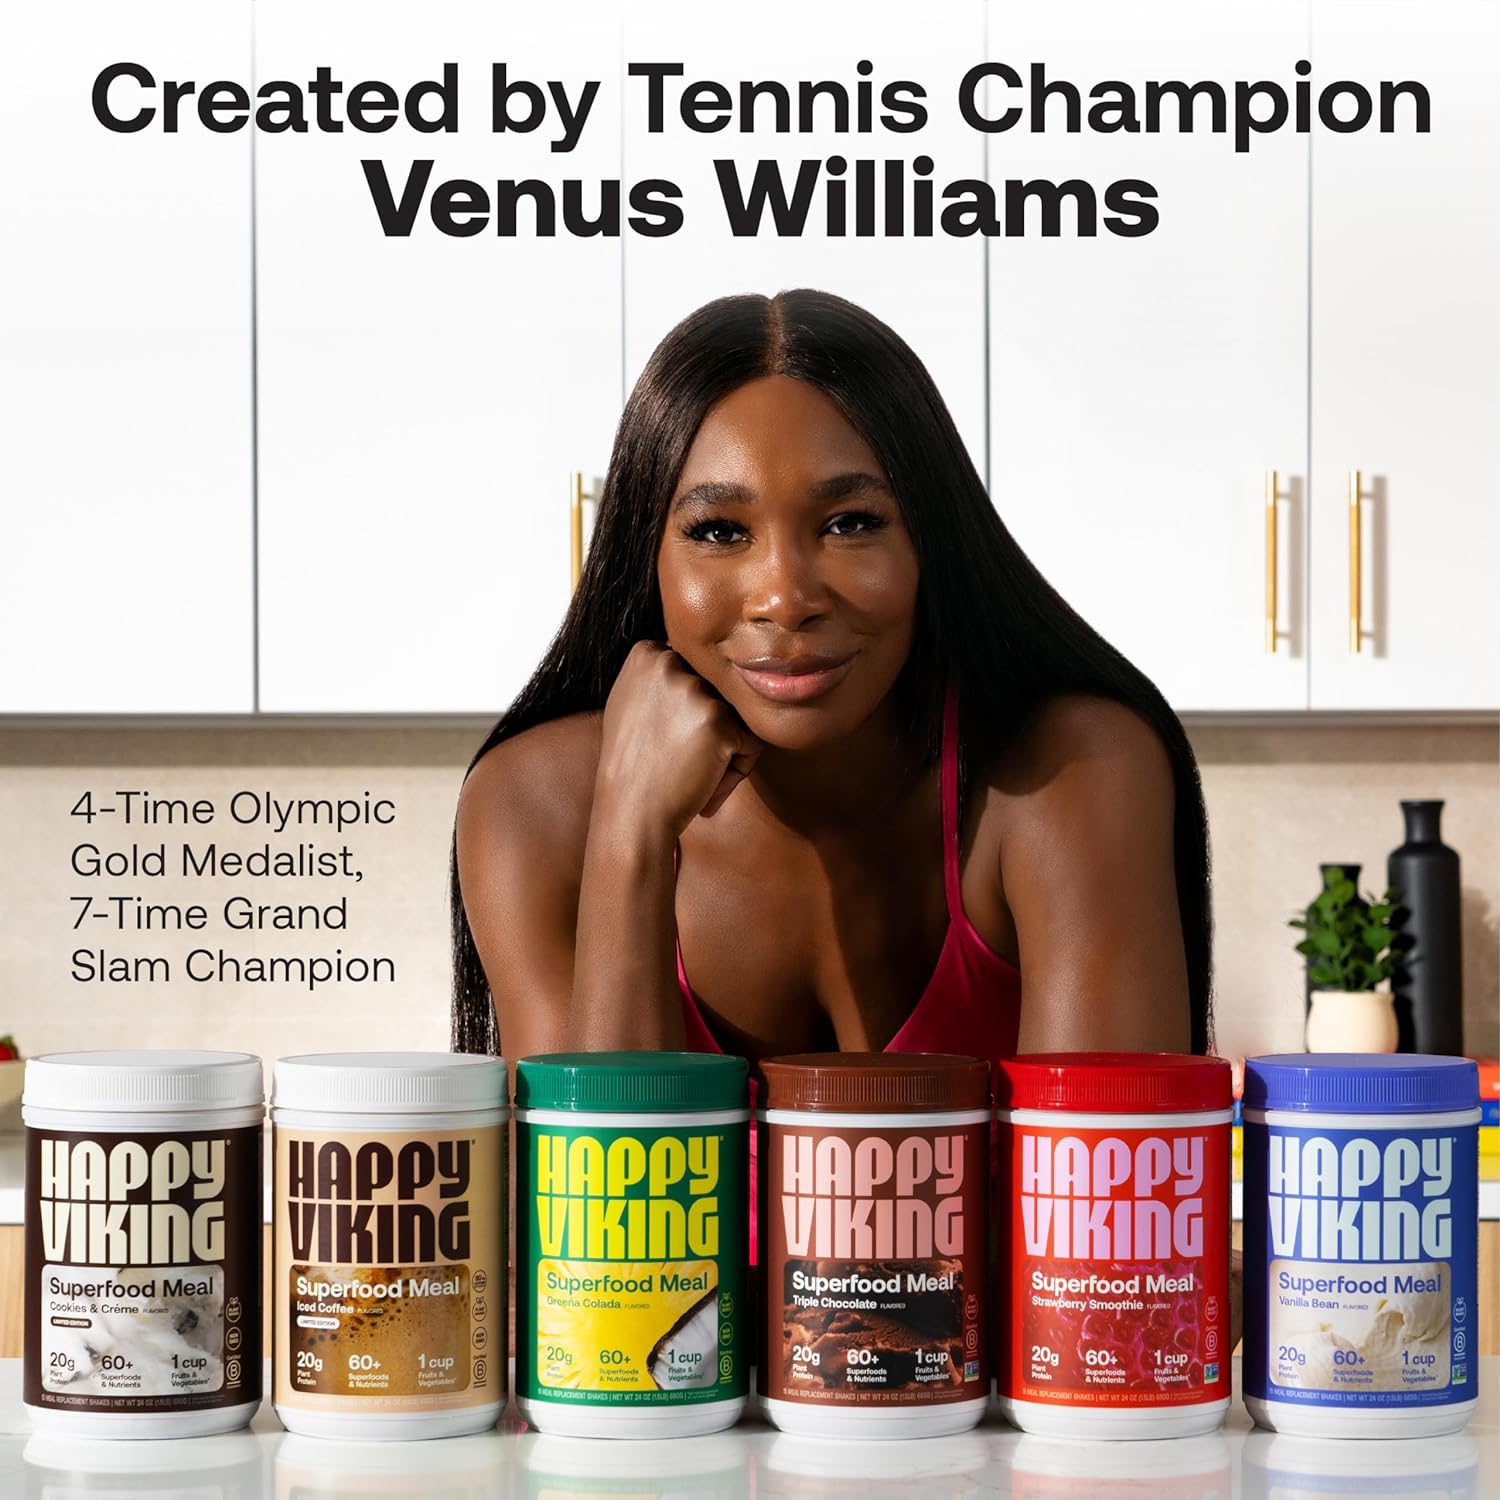 Venus Williams Happy Viking Superfood meal